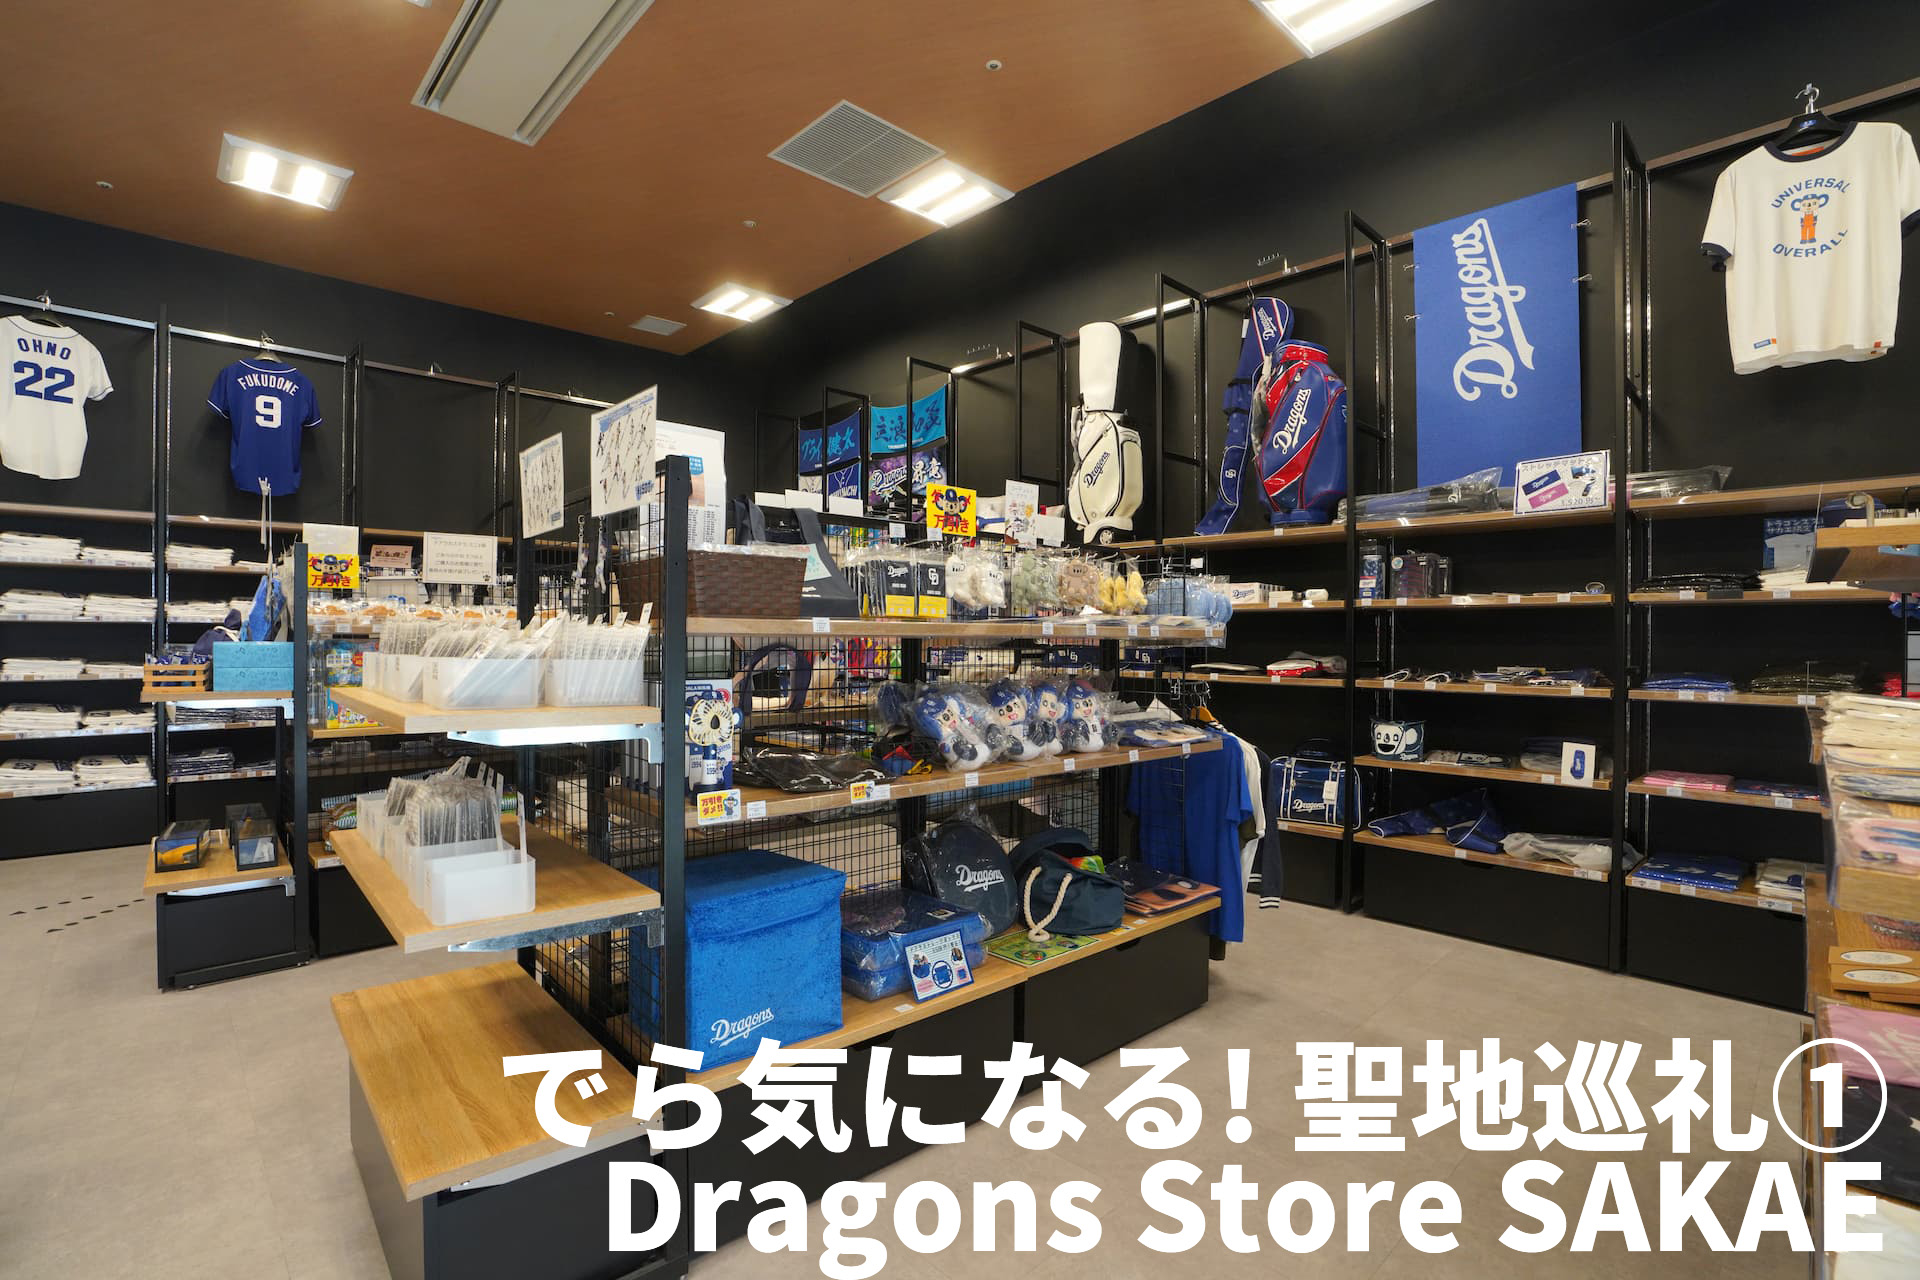 でら気になる! 聖地巡礼① Dragons Store SAKAEでレアアイテムをチェック!